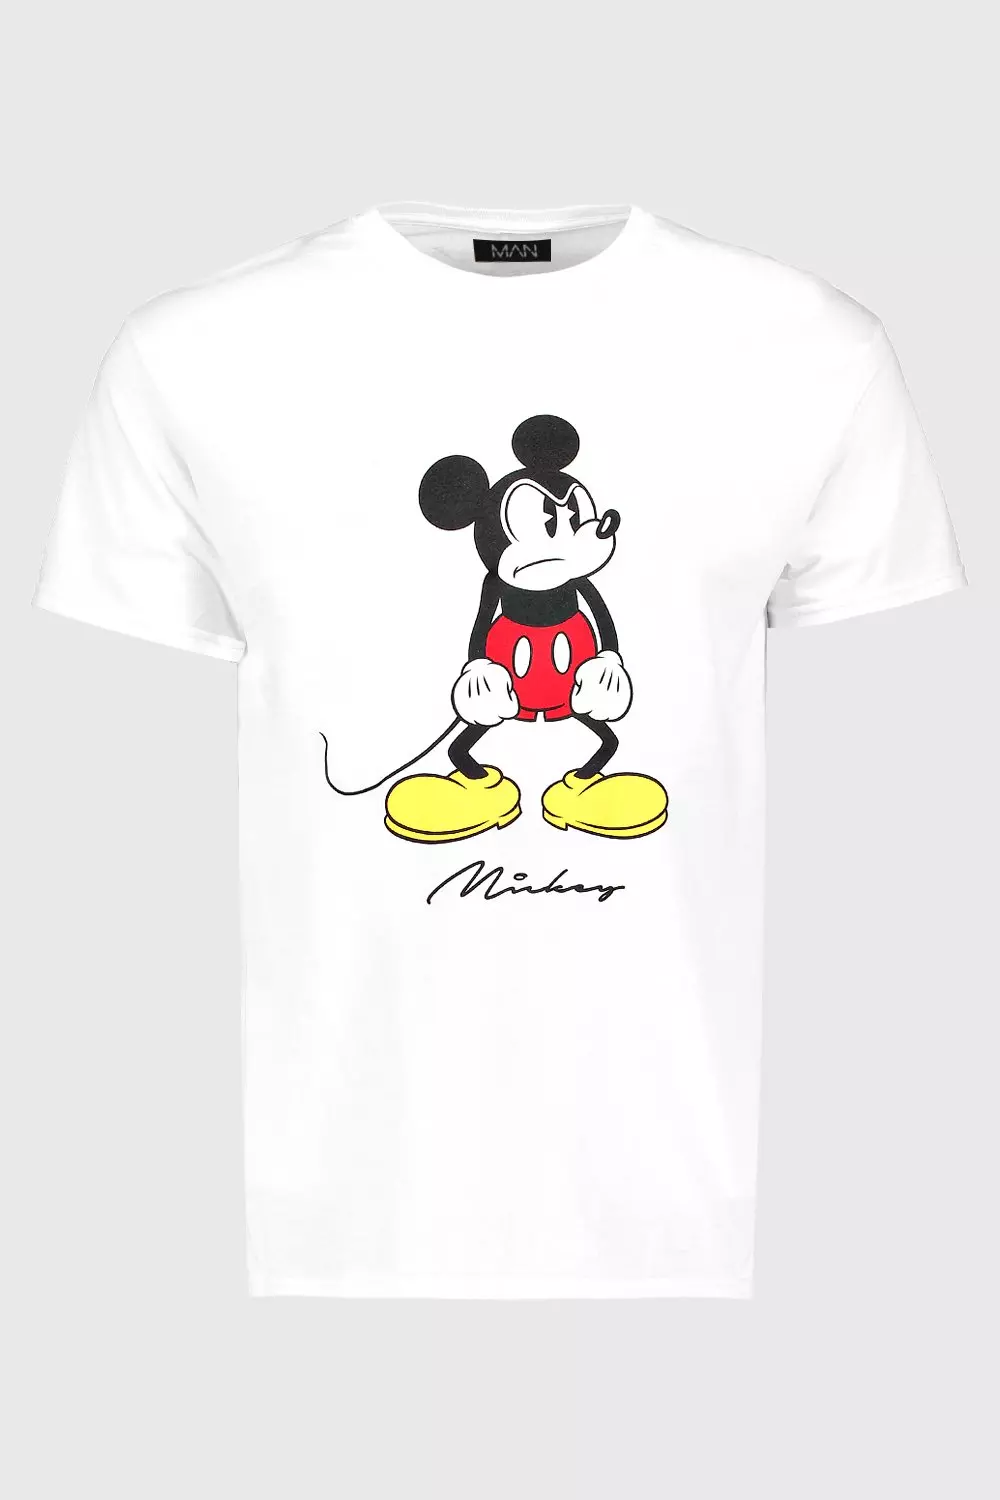 Mickey Disney Print Angry USA boohooMAN T-Shirt |